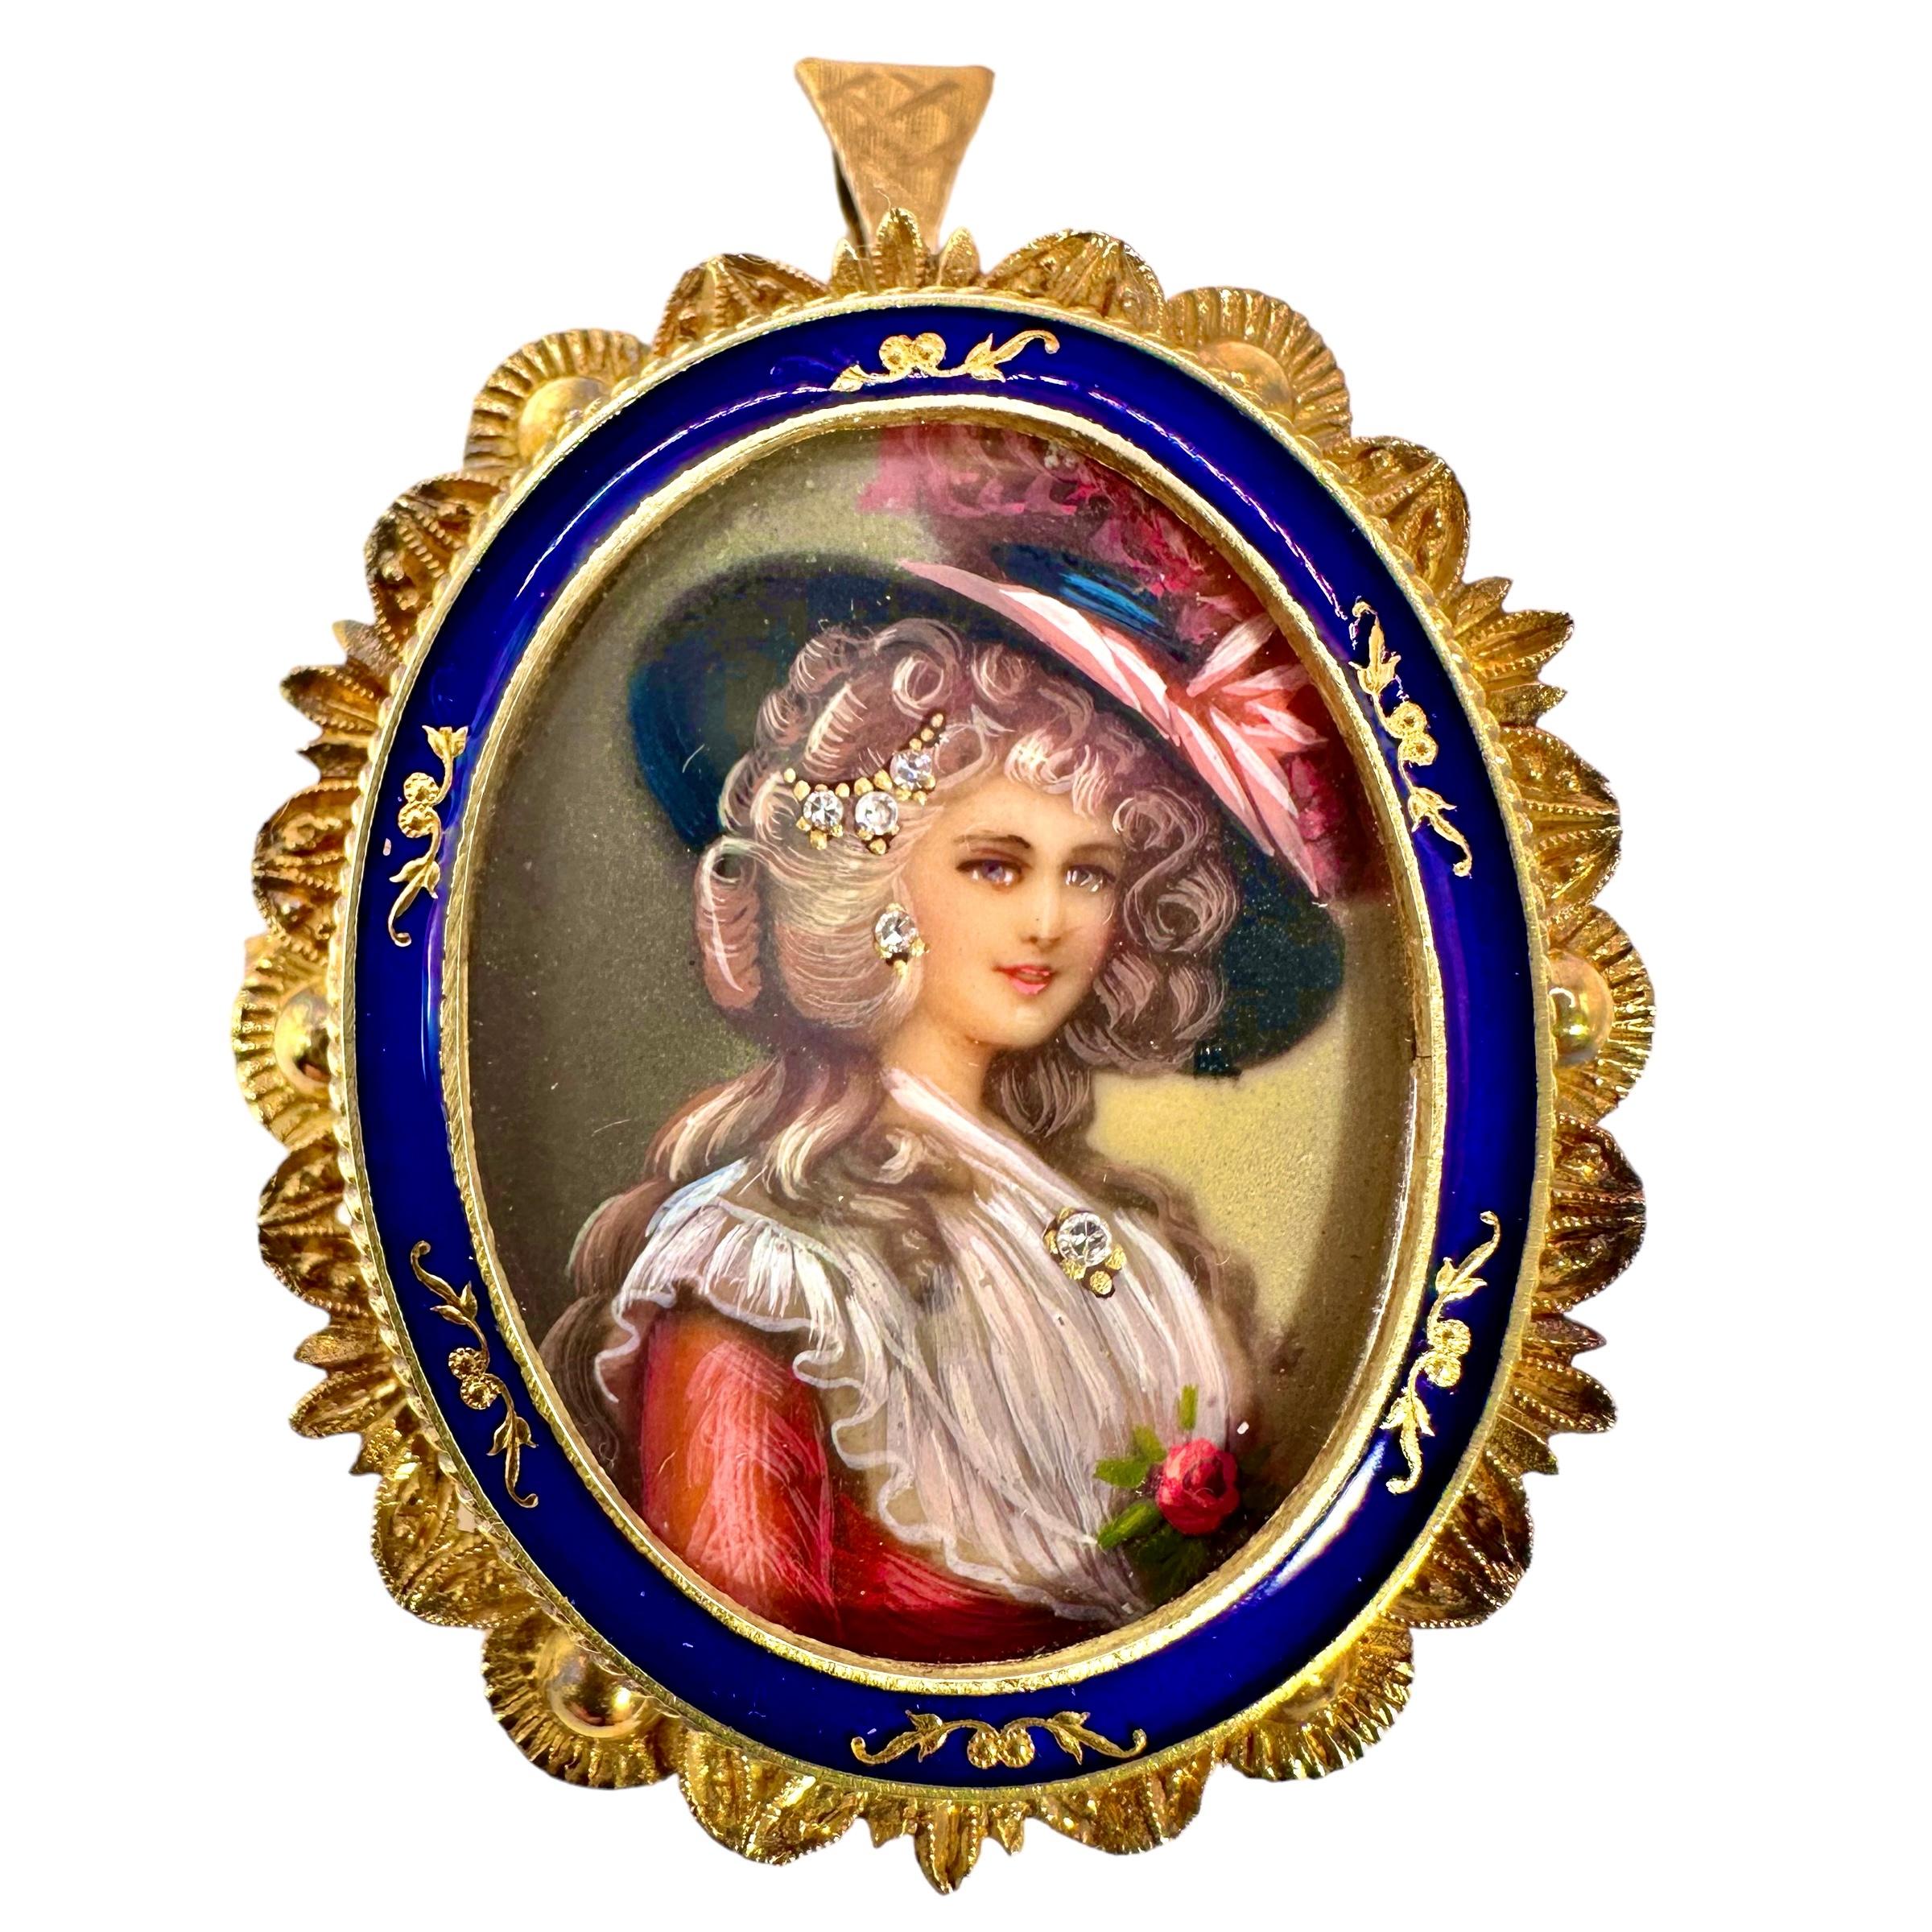 Ein handgemaltes Porträt einer Dame aus dem 19. Jahrhundert, die mit einem Diamantanhänger, Diamantohrringen und einer Diamanthaarnadel geschmückt ist,
Er trägt einen großen Hut. Dieses schöne Porträt wird von einem Rahmen aus 18-karätigem Gelbgold